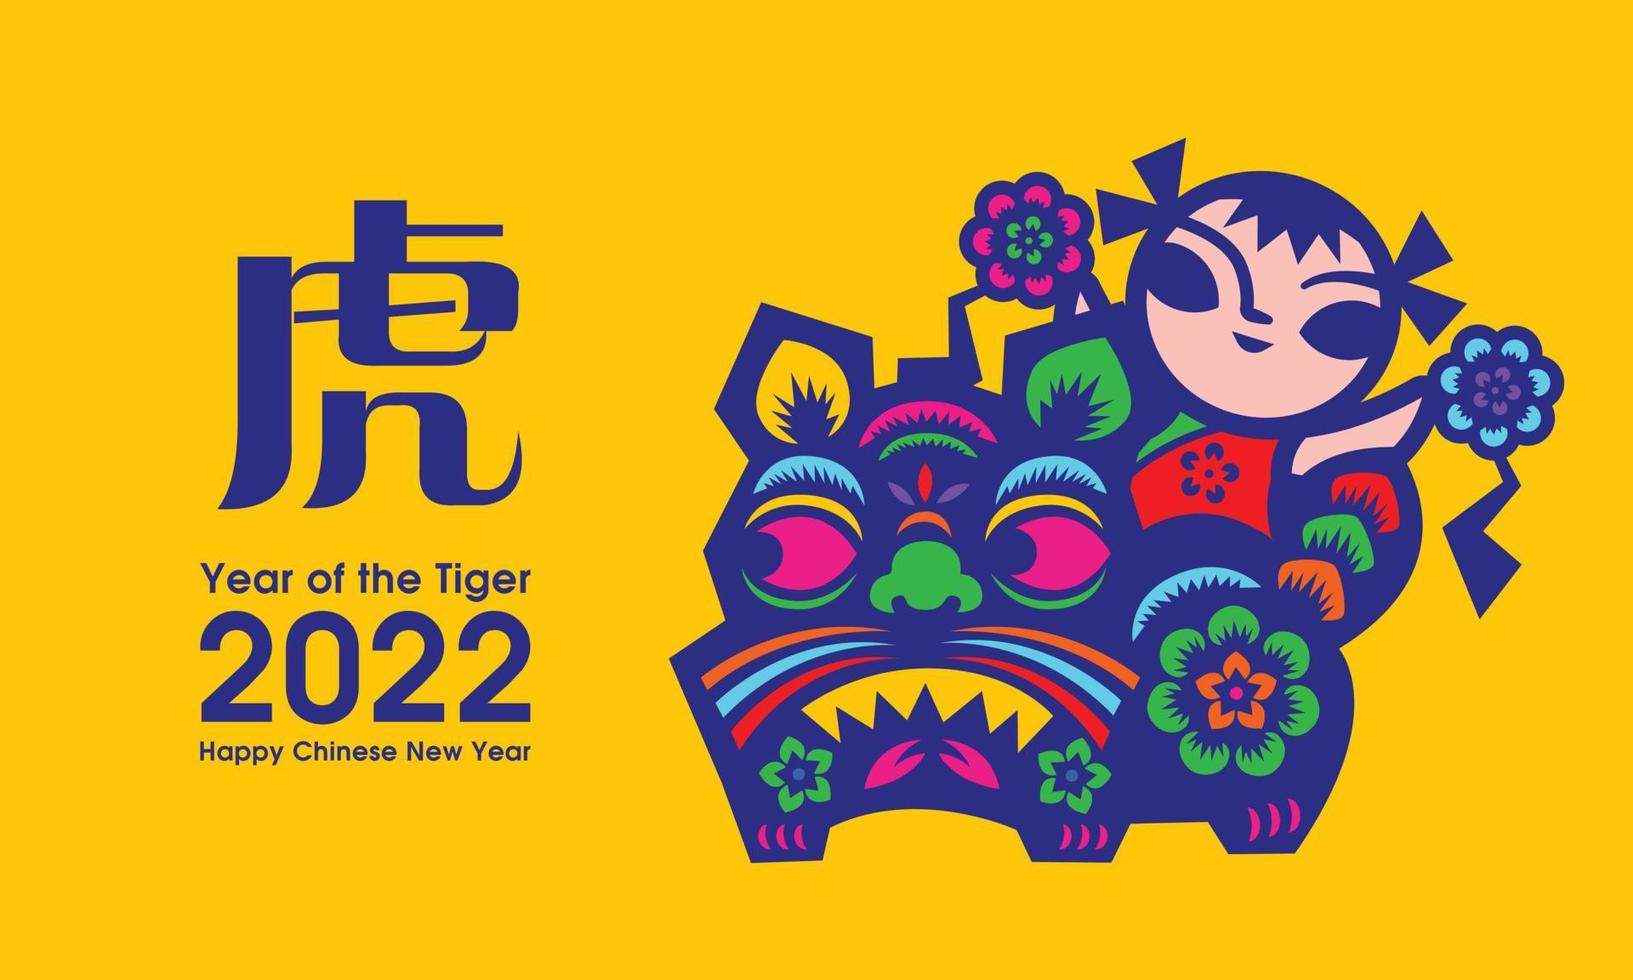 chinees nieuwjaar 2022 groetbanner. traditioneel Chinees papercut-ontwerp van tijger en kind op gele achtergrond vector